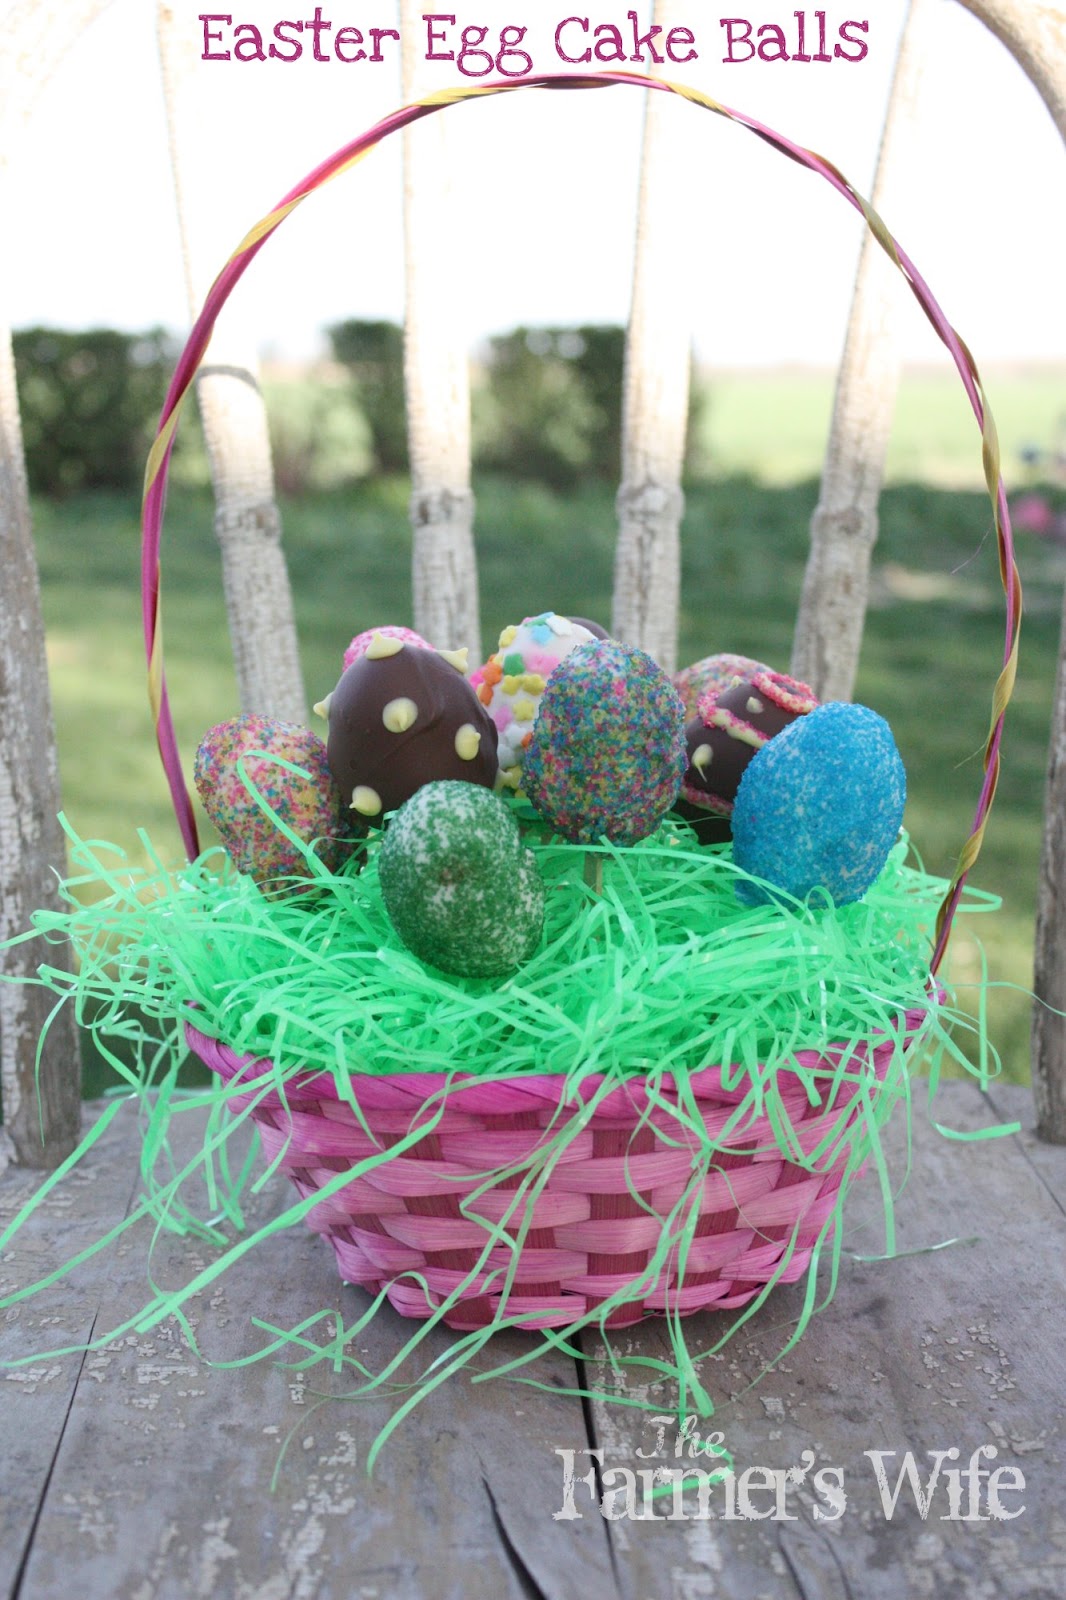 The Farmer's Wife: Easter Egg Cake Balls